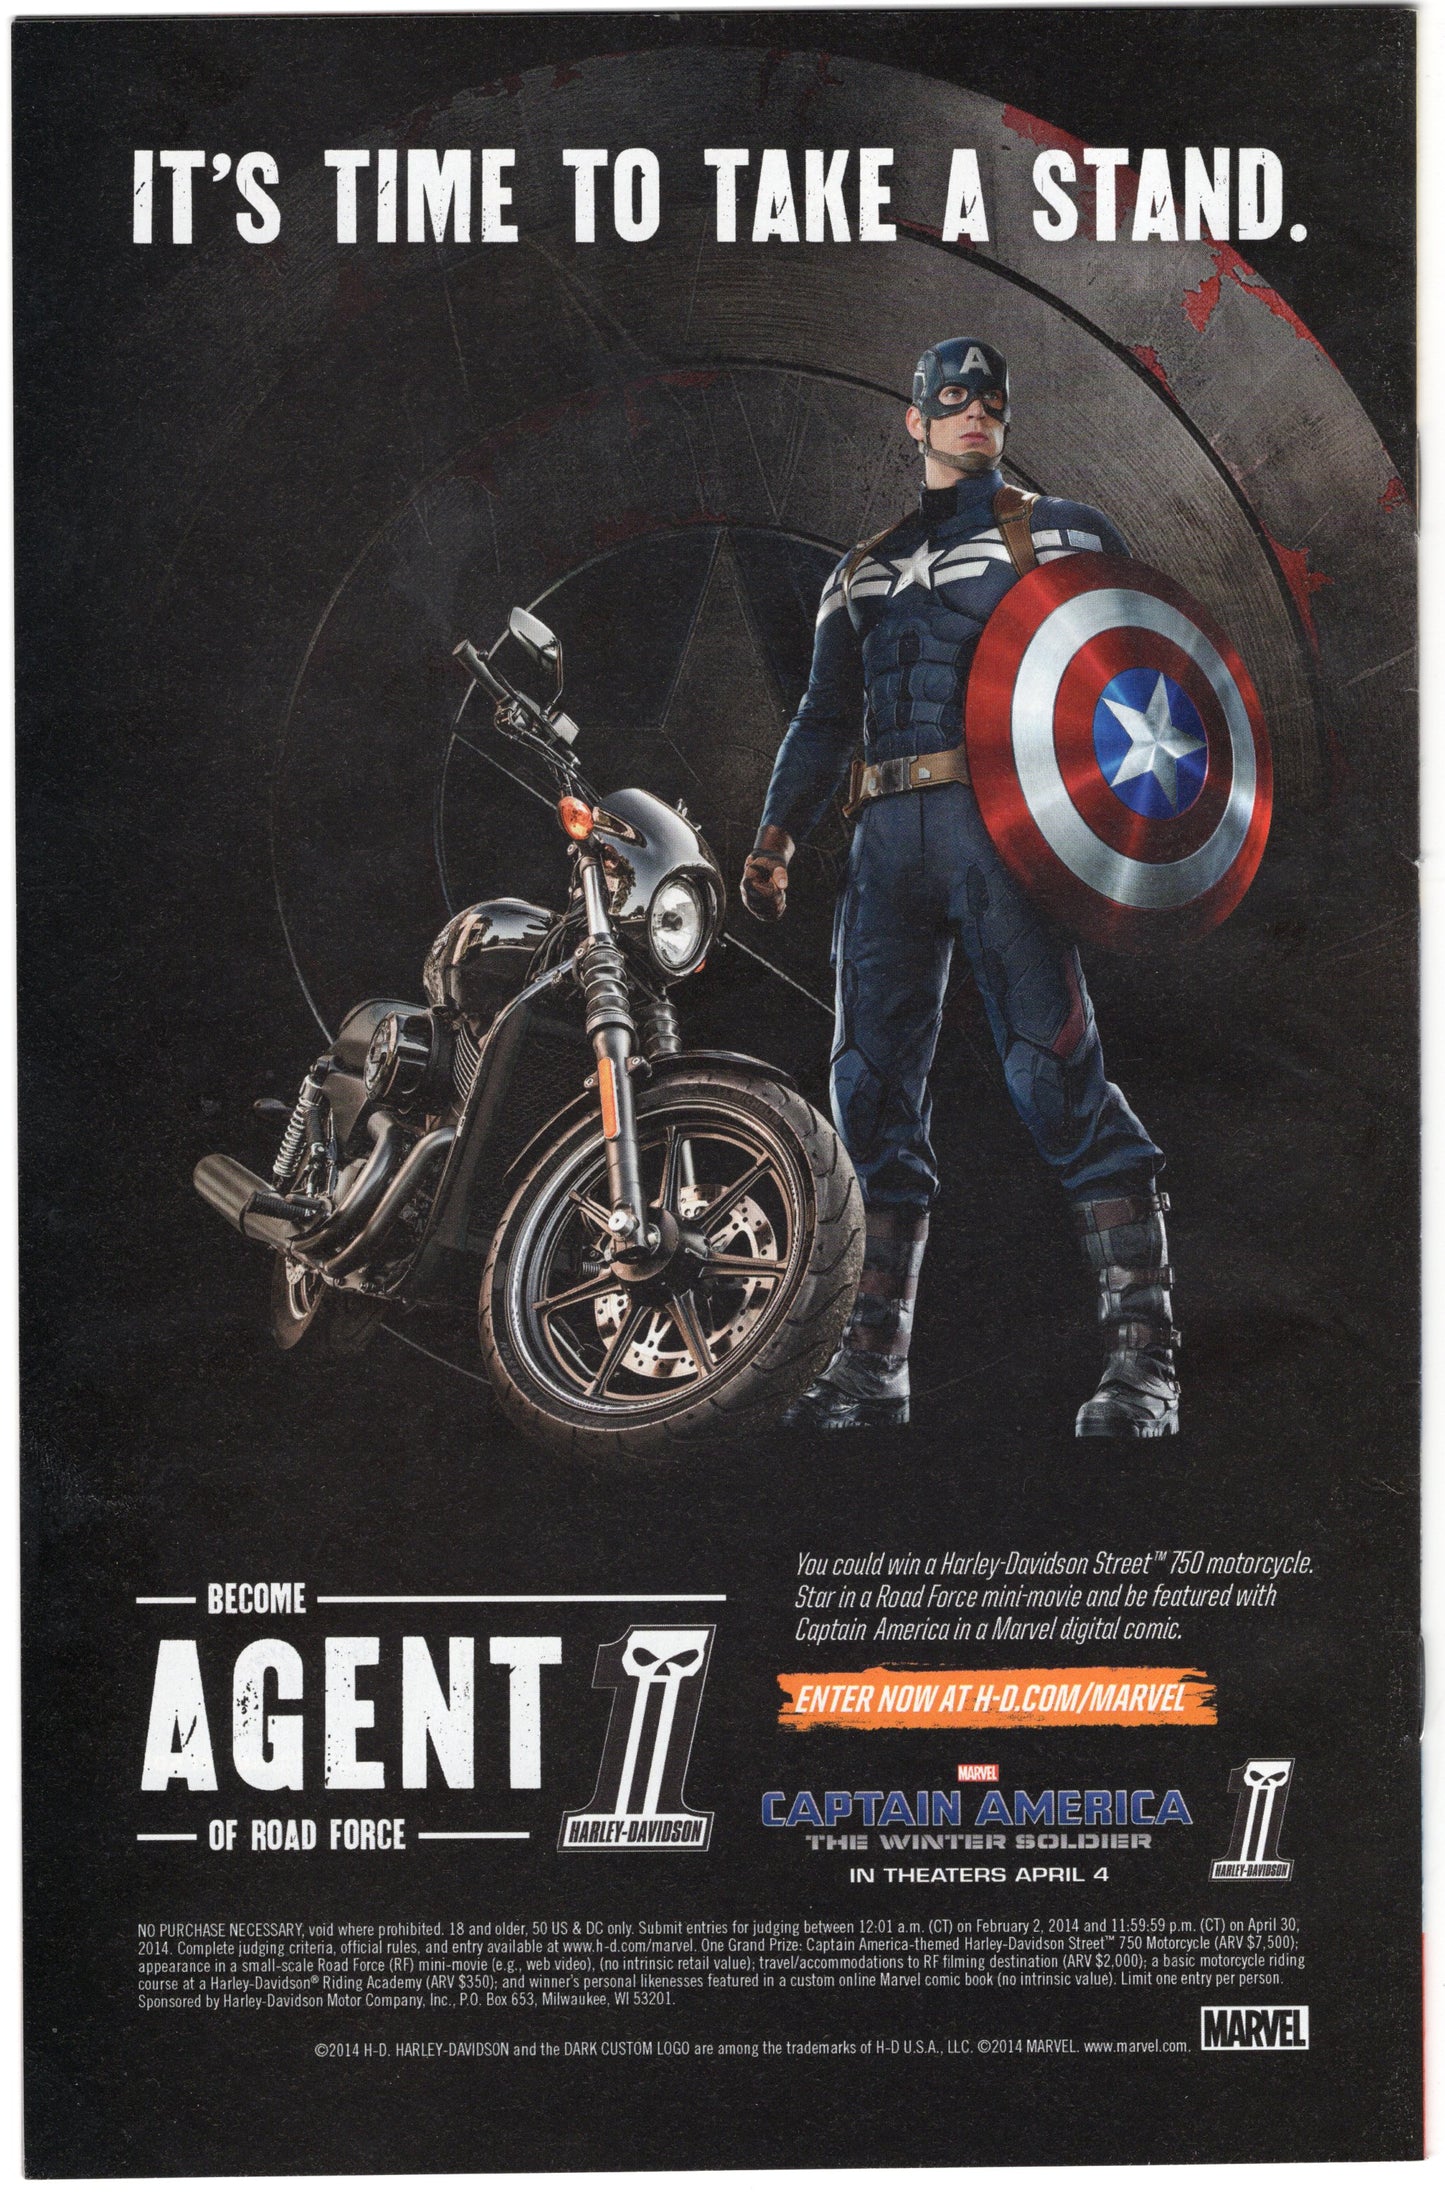 Captain Marvel - Issue #2 (June, 2014 - Marvel Comics) VF+